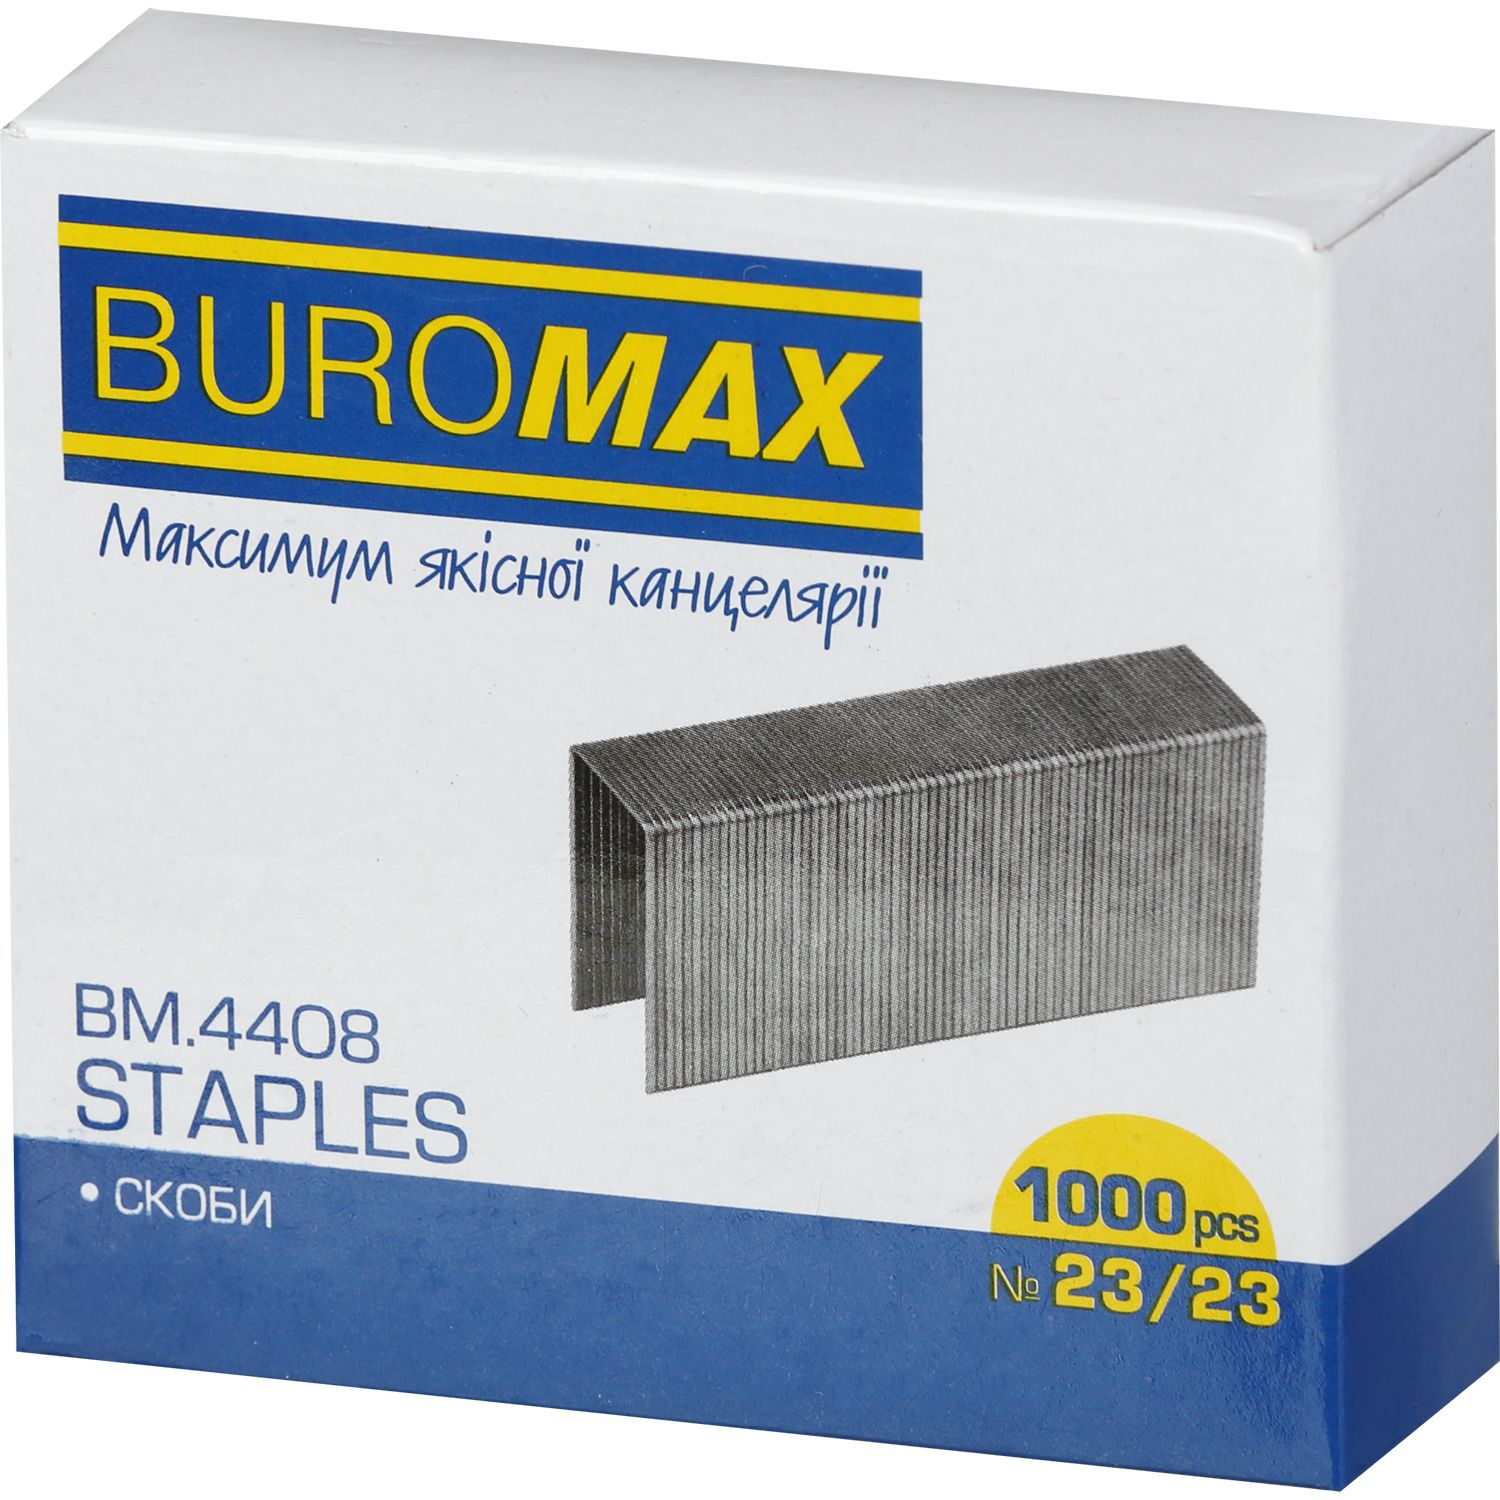 Скобы для степлеров Buromax Люкс №23/23 1000 шт. (BM.4408) - фото 1